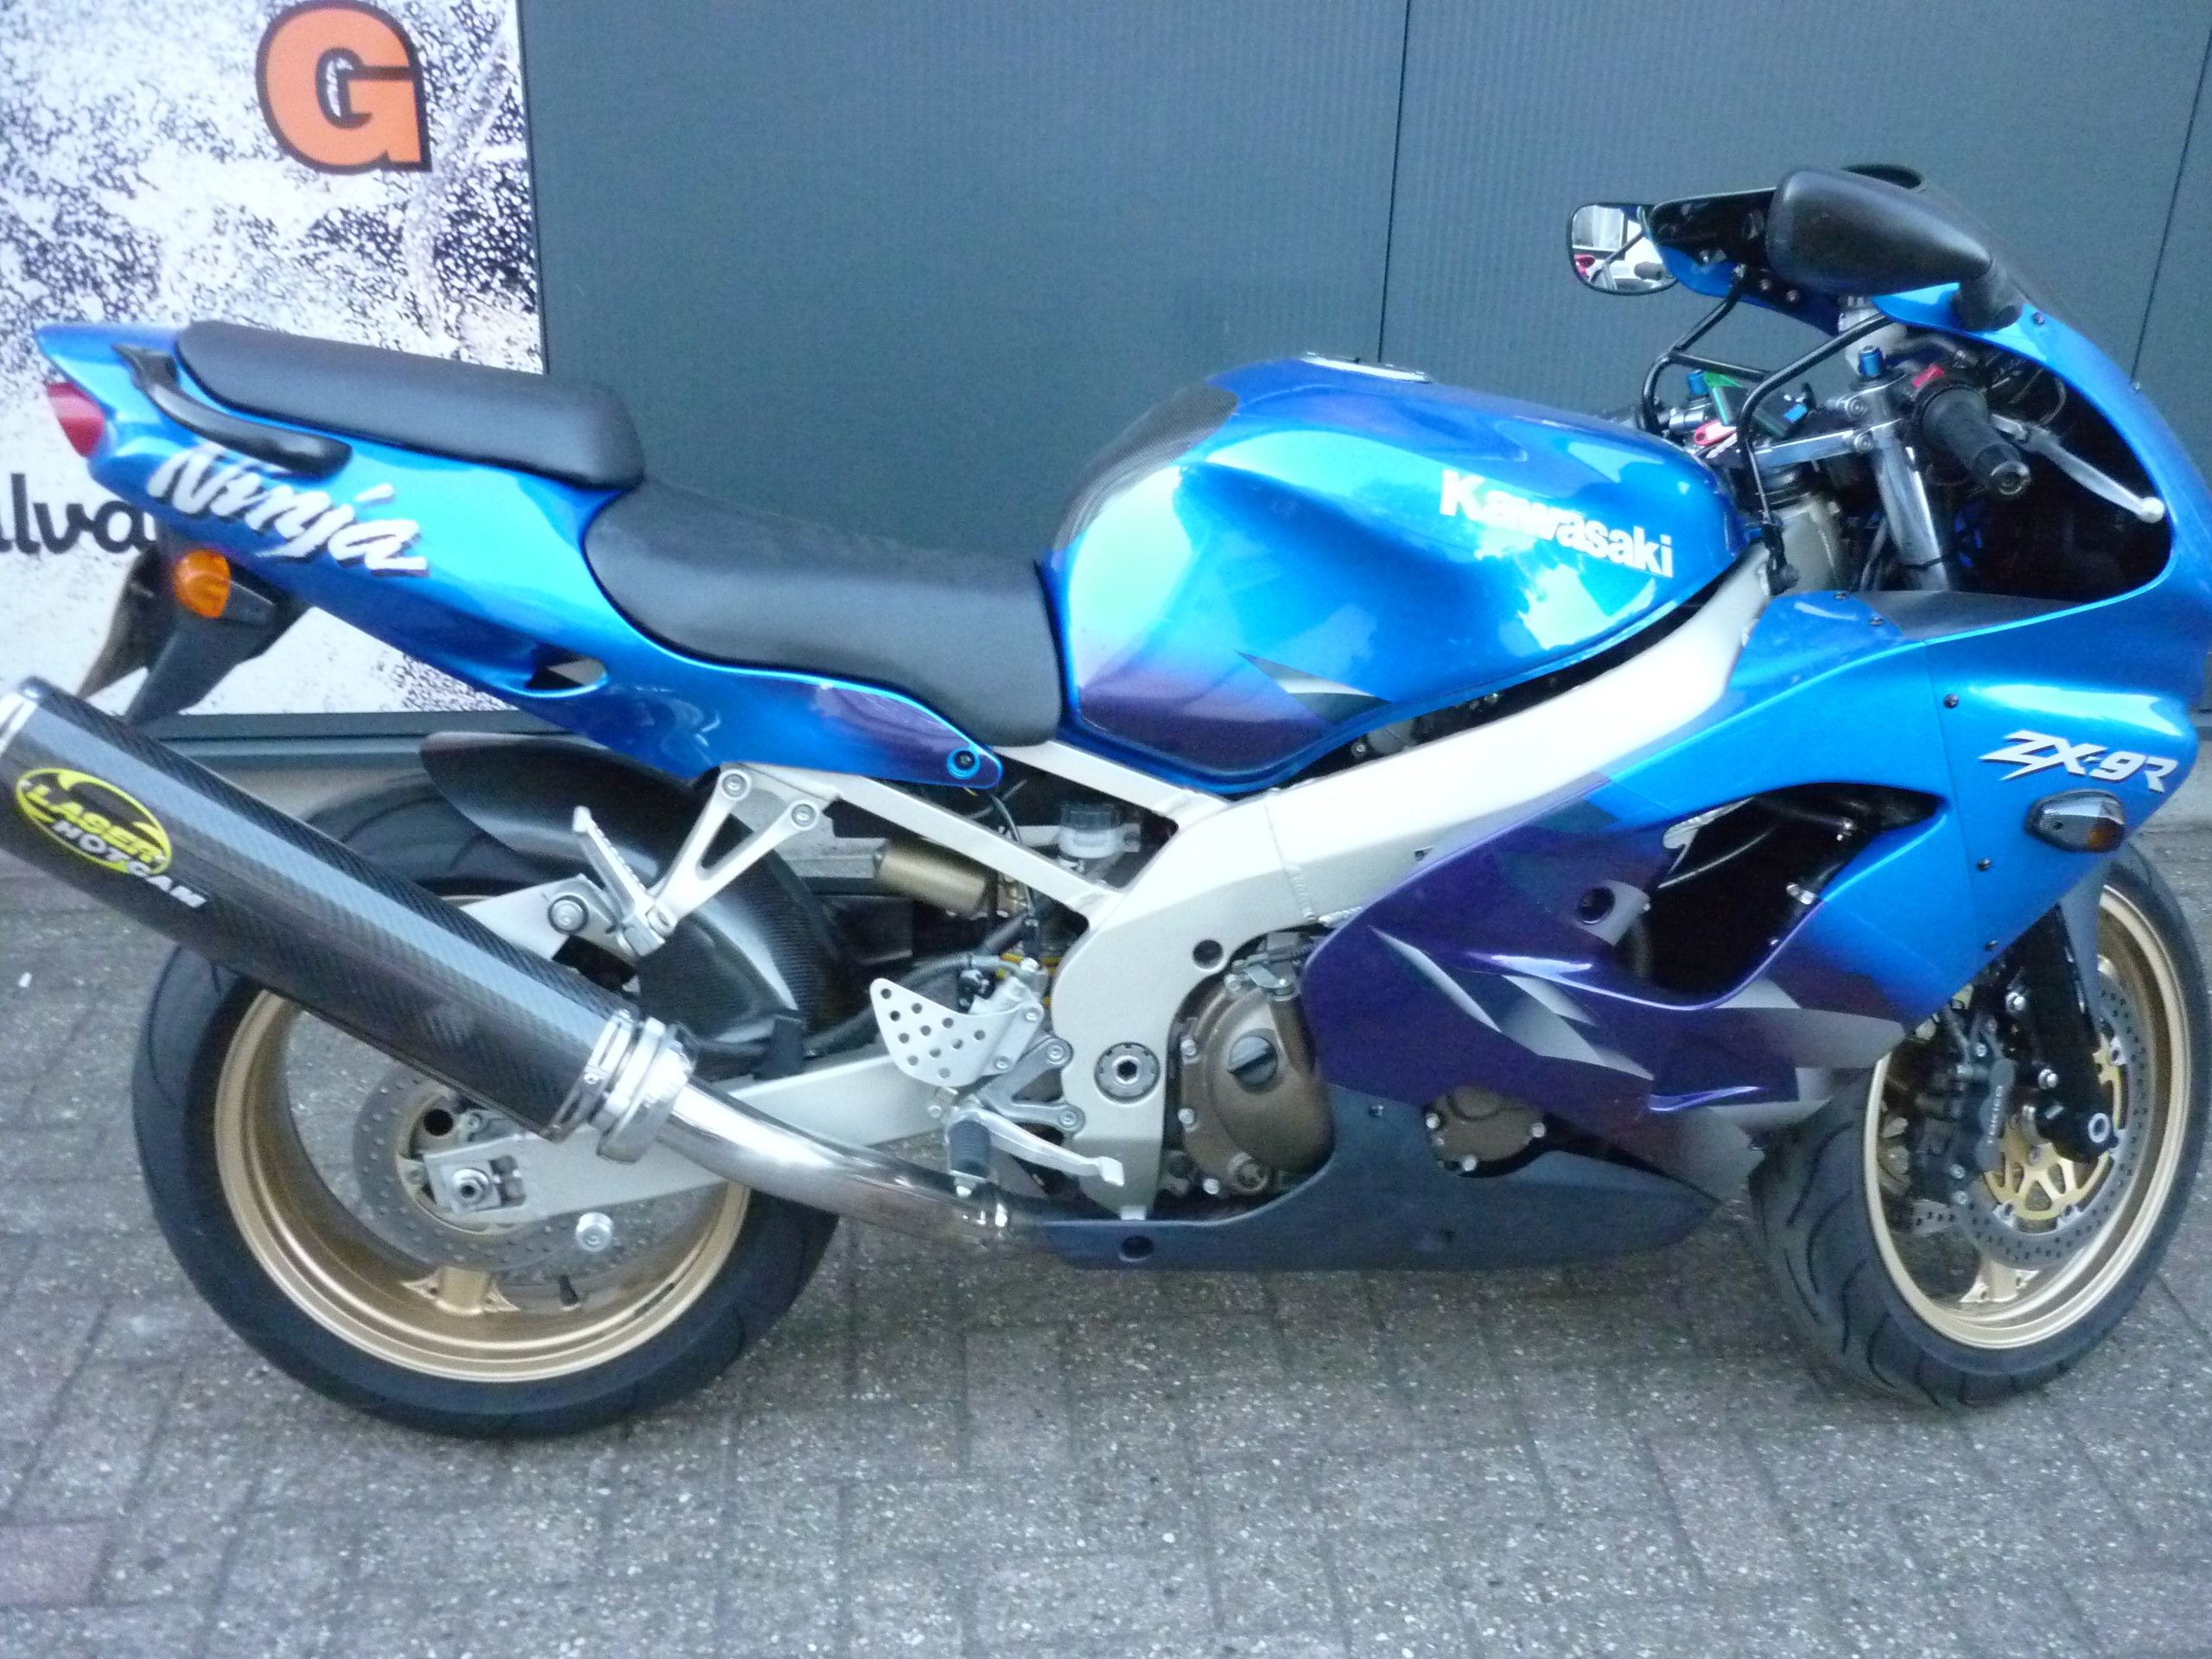 Kawasaki - ZX-9R  - €2699.00